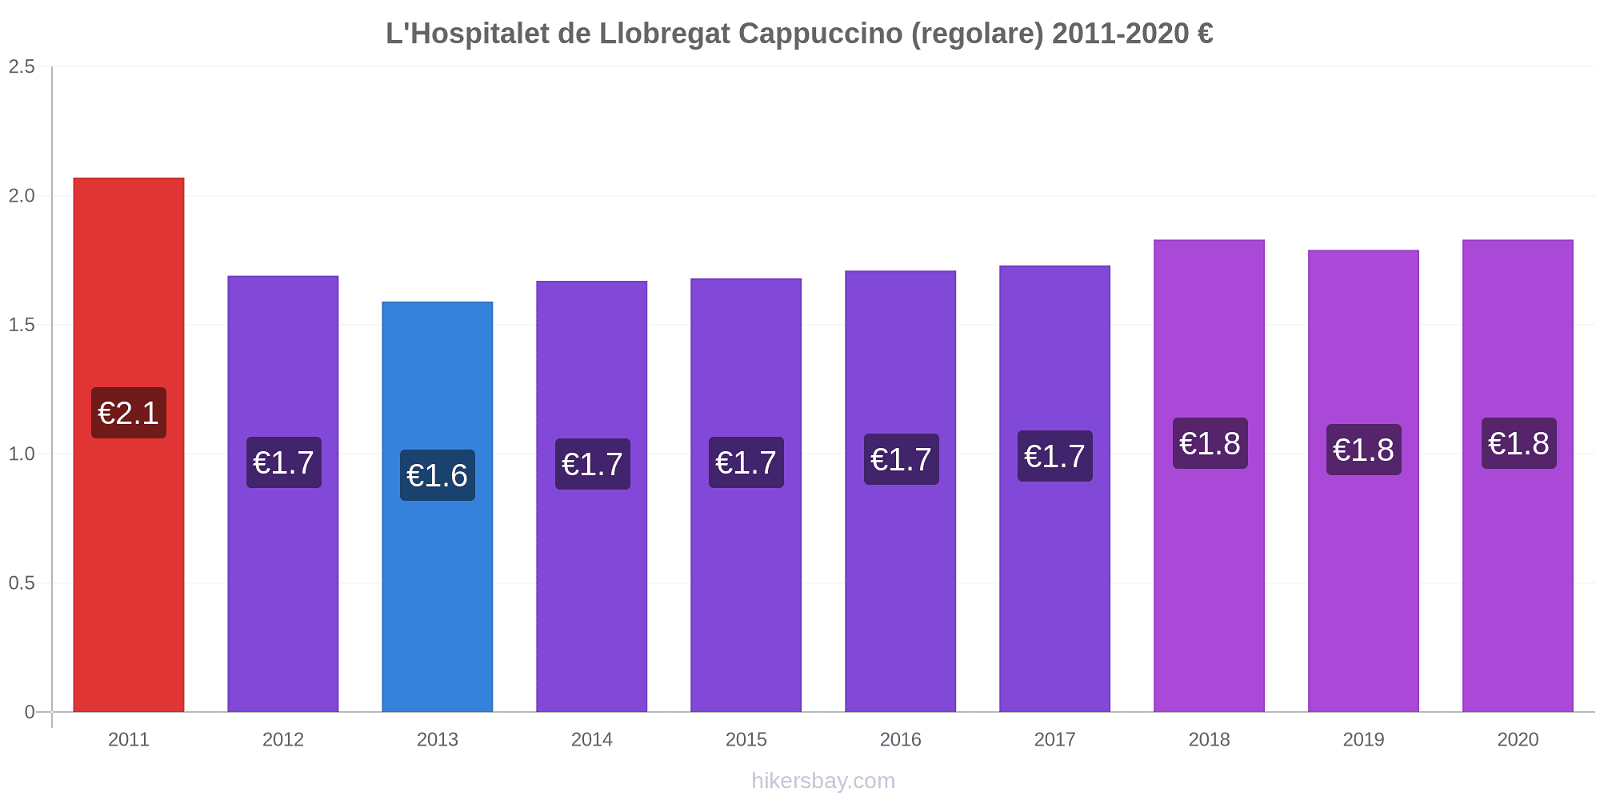 L'Hospitalet de Llobregat variazioni di prezzo Cappuccino (normale) hikersbay.com